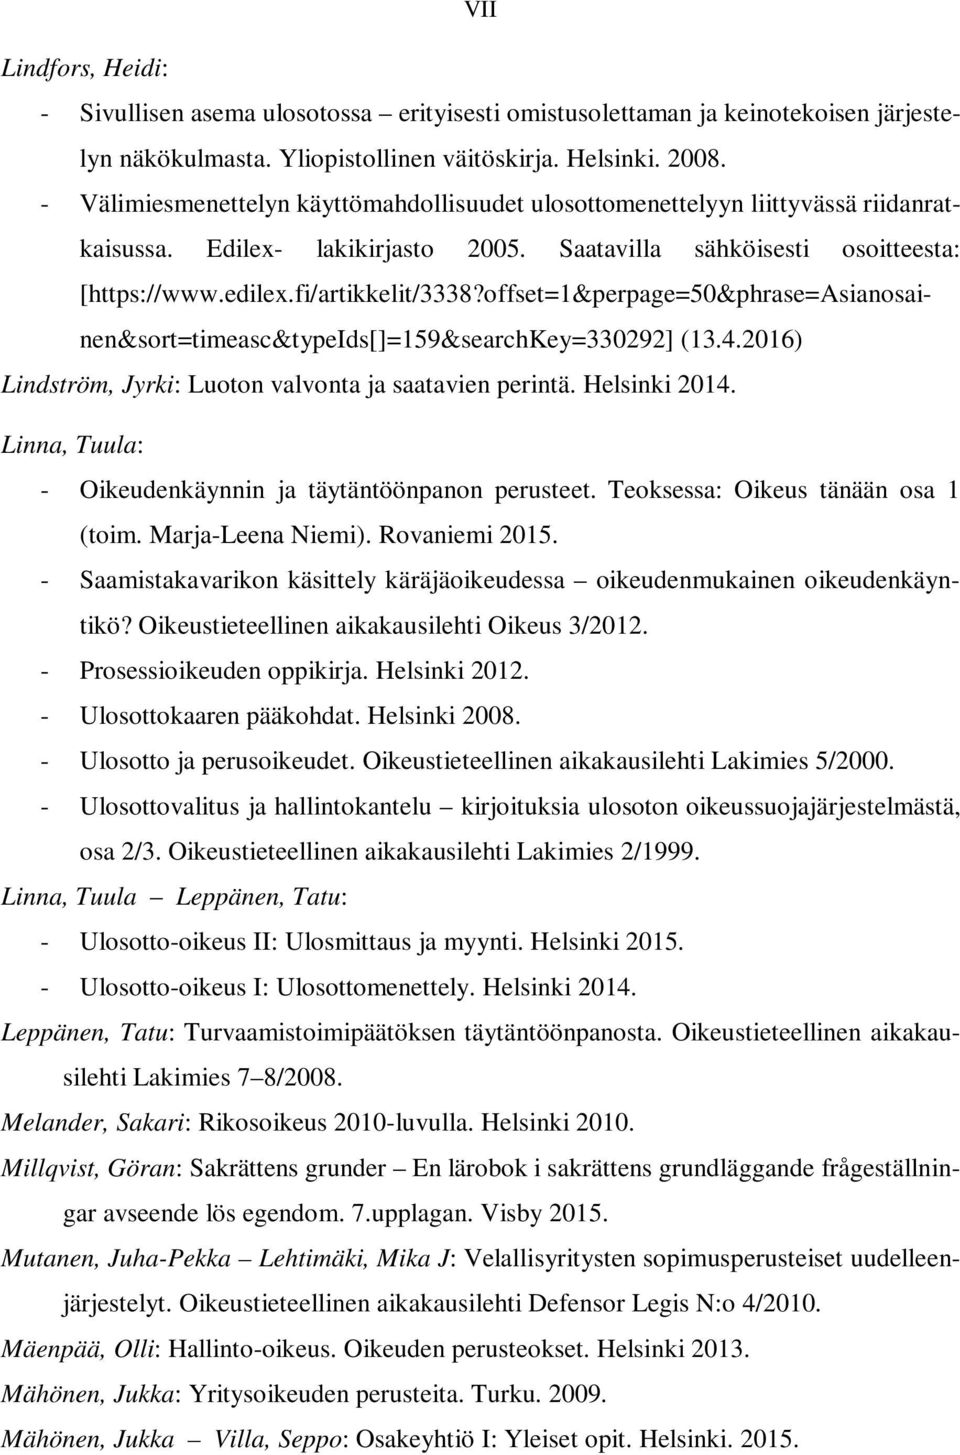 offset=1&perpage=50&phrase=asianosainen&sort=timeasc&typeids[]=159&searchkey=330292] (13.4.2016) Lindström, Jyrki: Luoton valvonta ja saatavien perintä. Helsinki 2014.